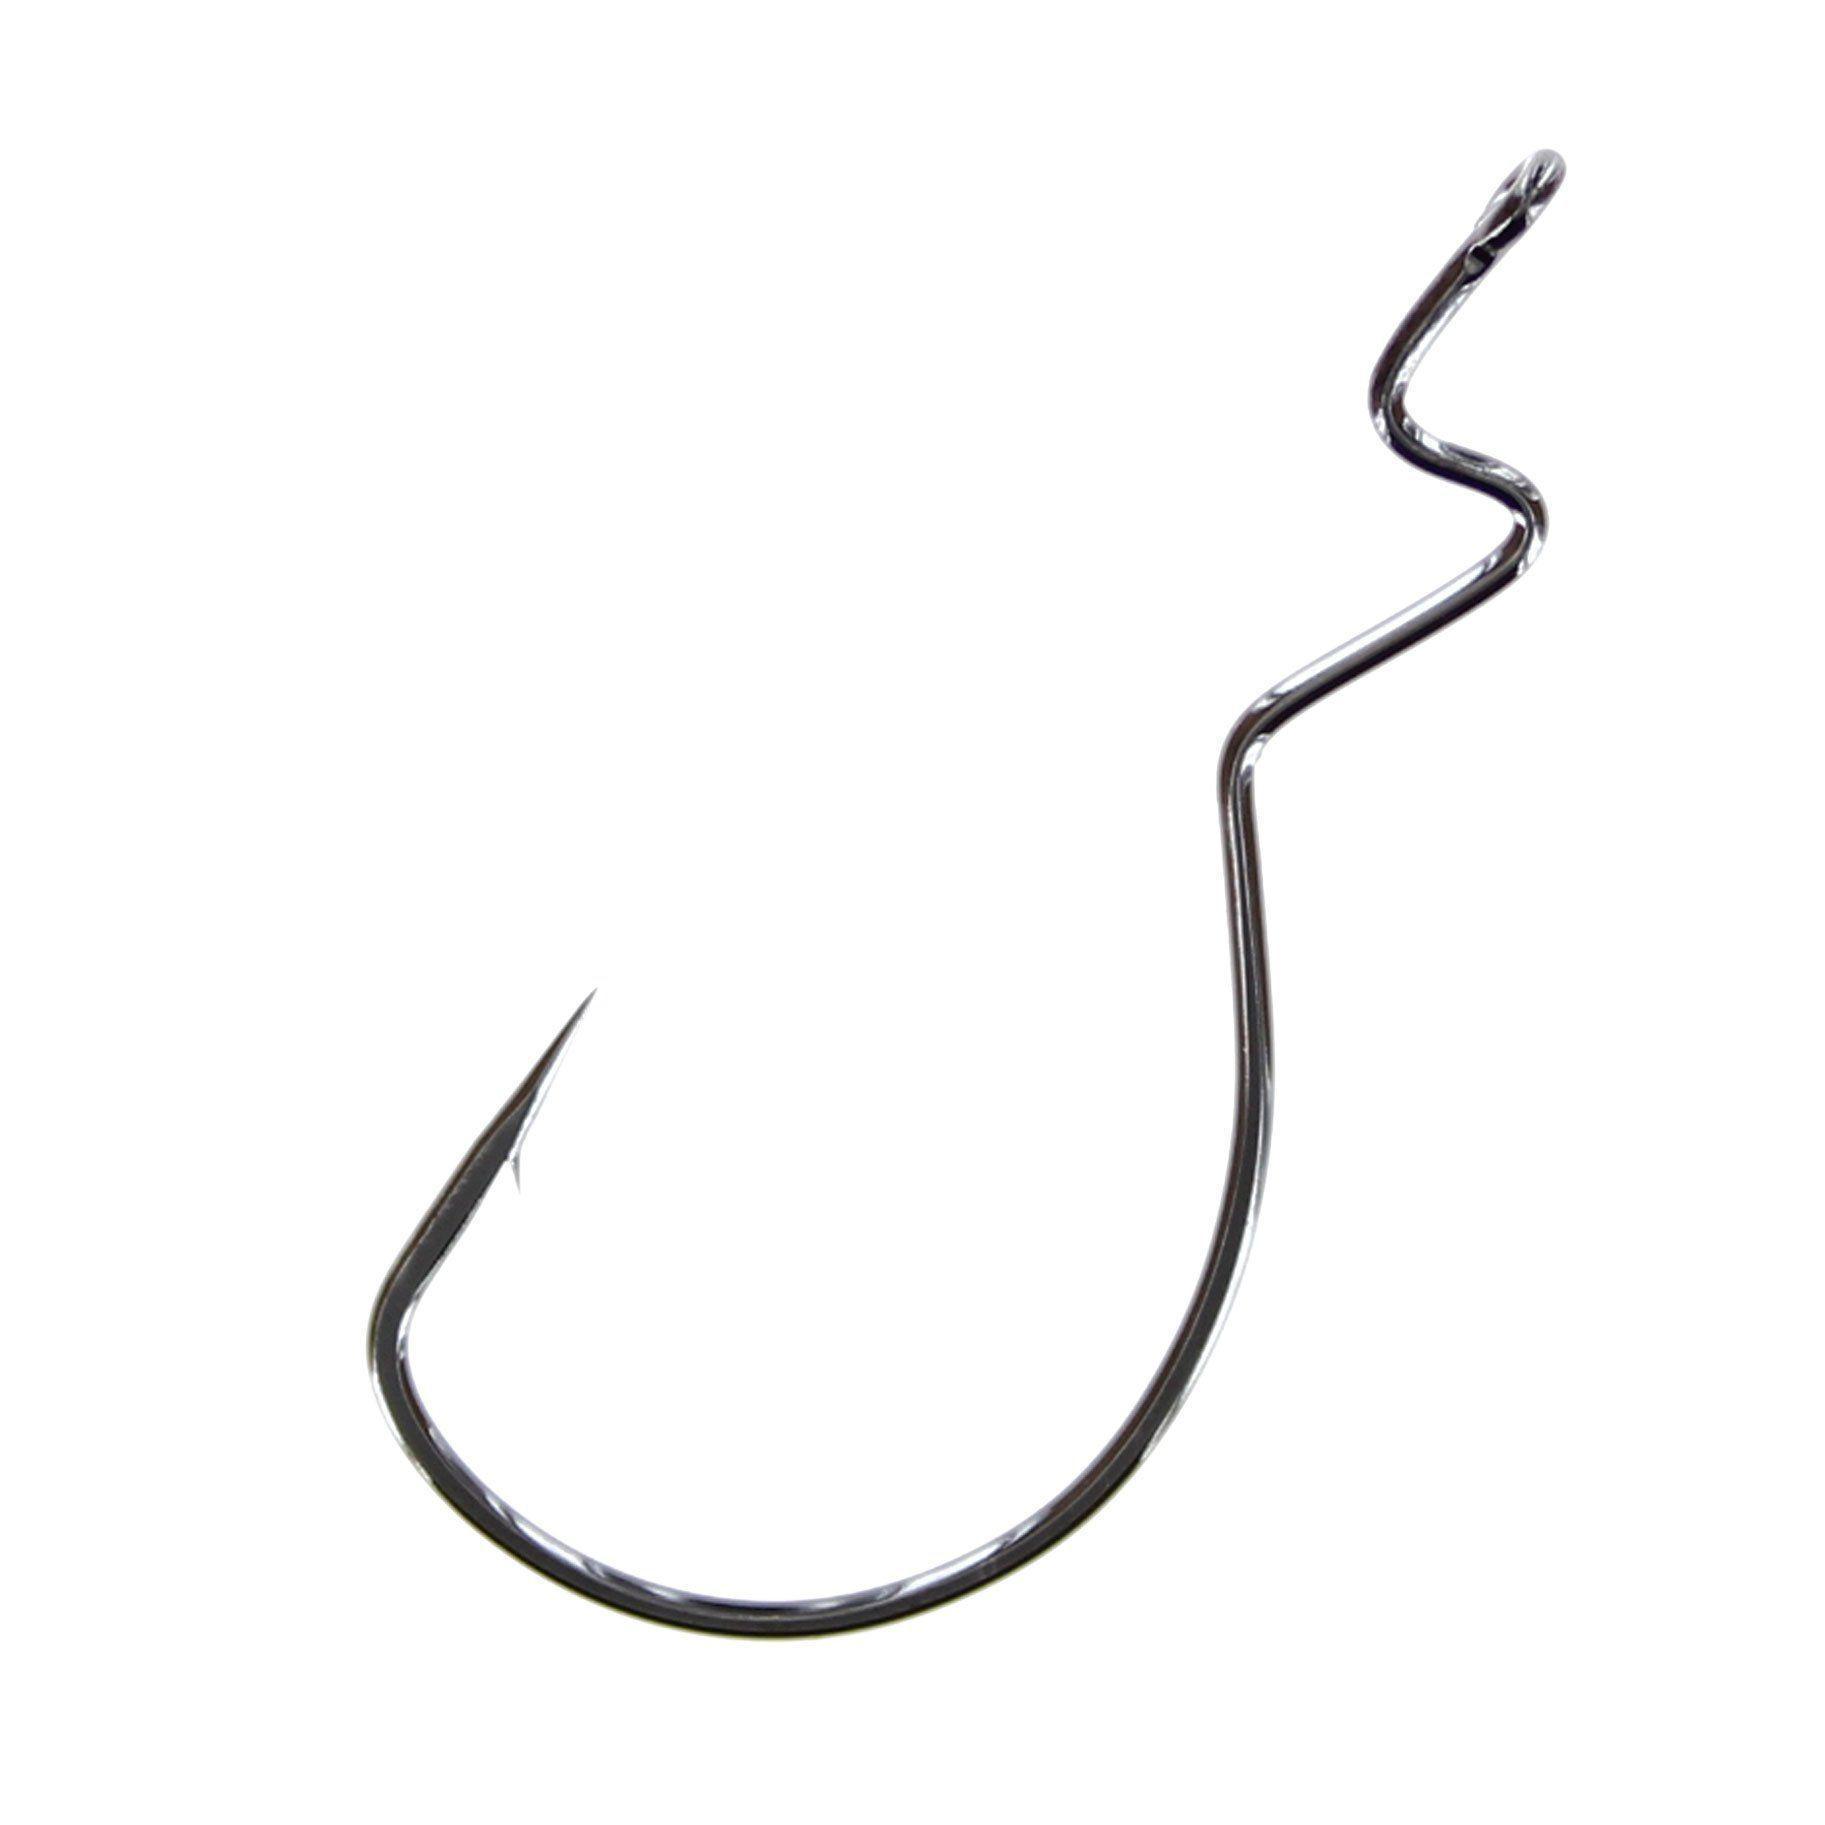 Gamakatsu Skip Gap Worm Hook, 5/0 - 5 pack